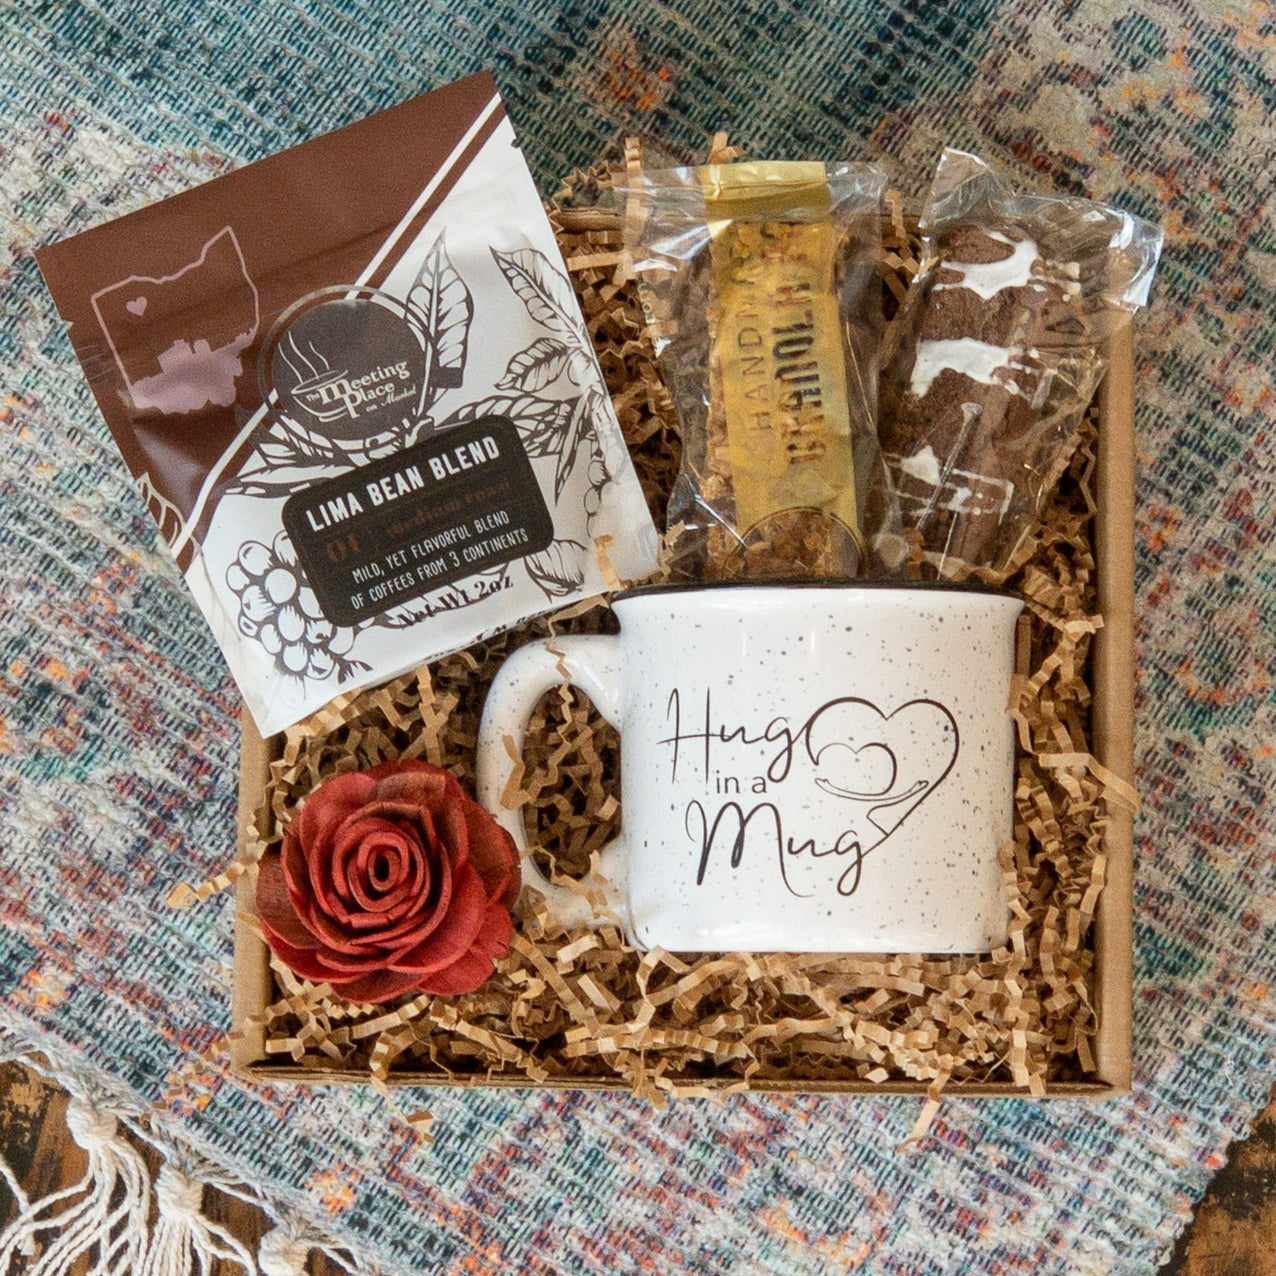 Coffee Gift Box With Yeti Mug, Coffee Lovers Gift Set, Yeti Rambler Mug &  Coffee, Chocolate Covered Coffee Beans, Coffee Gifts